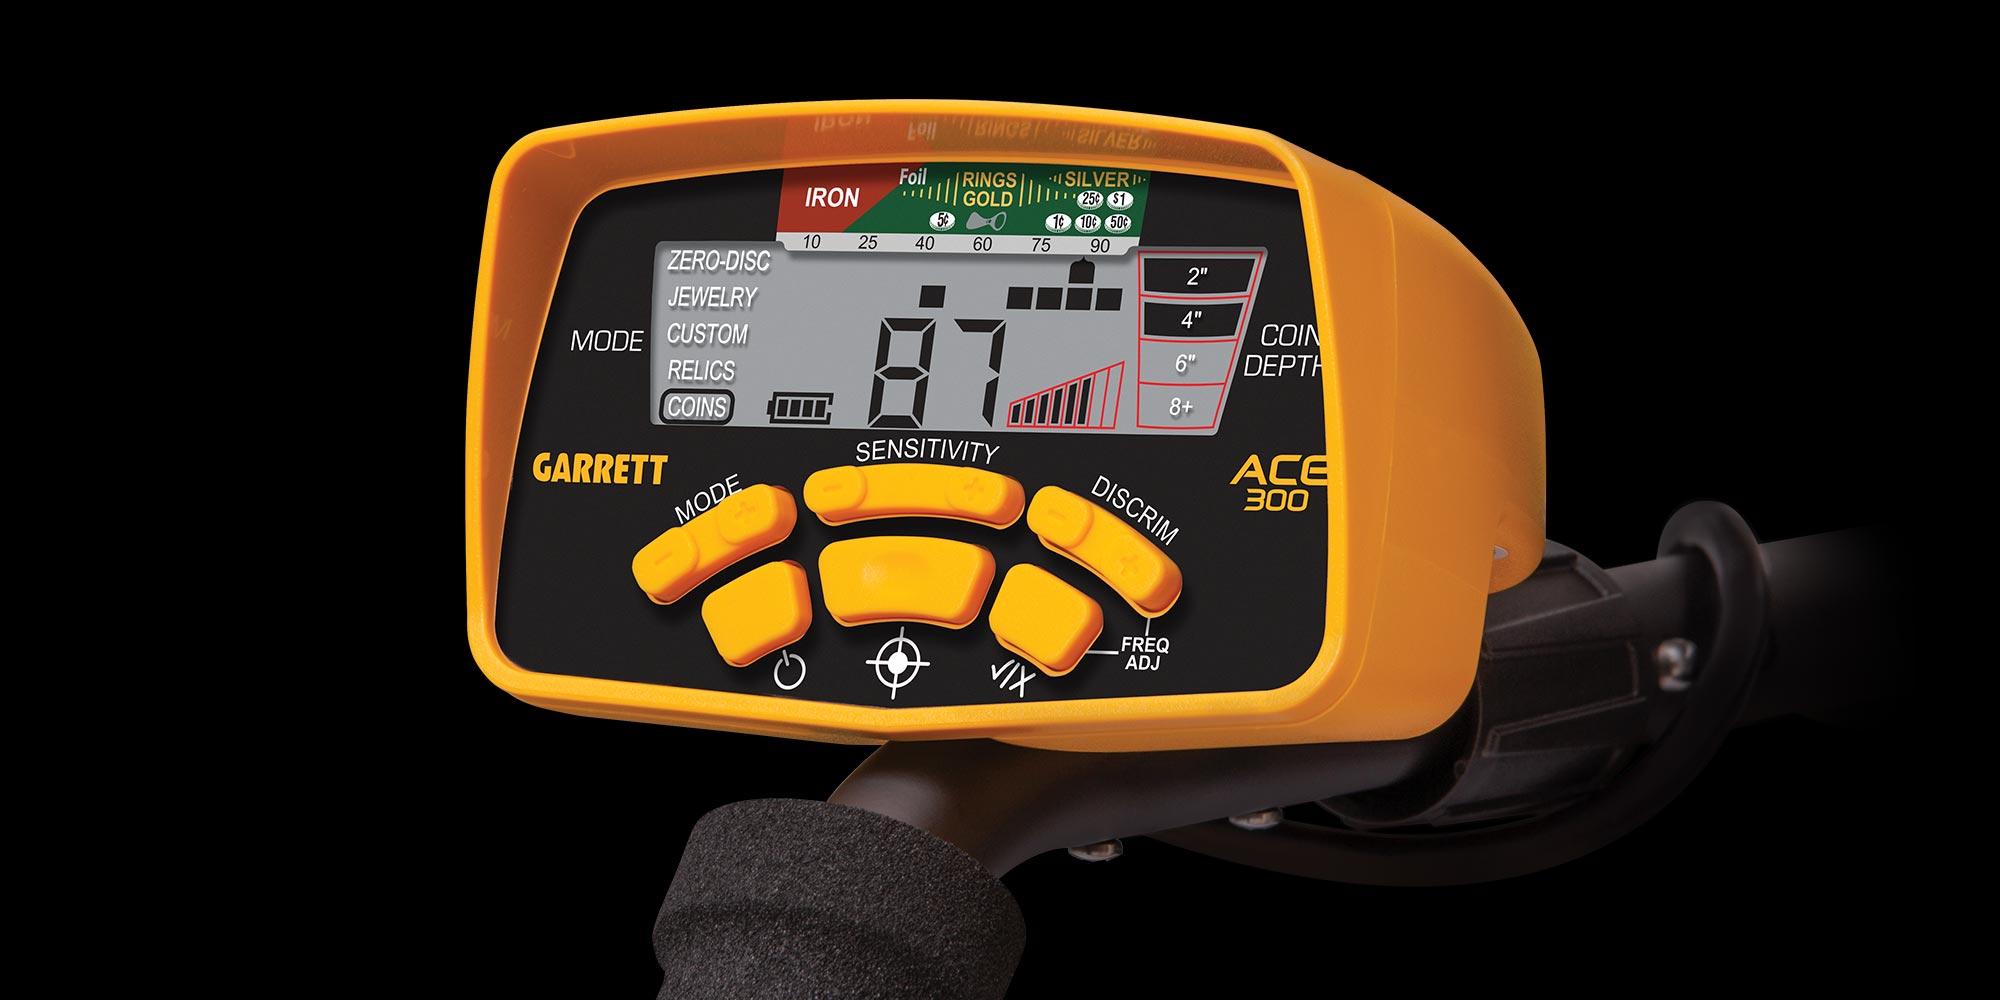 Garrett ACE 300 Metal Detector Waterproof Coil, Headphones, Coil and Rain  Cover 789185939083